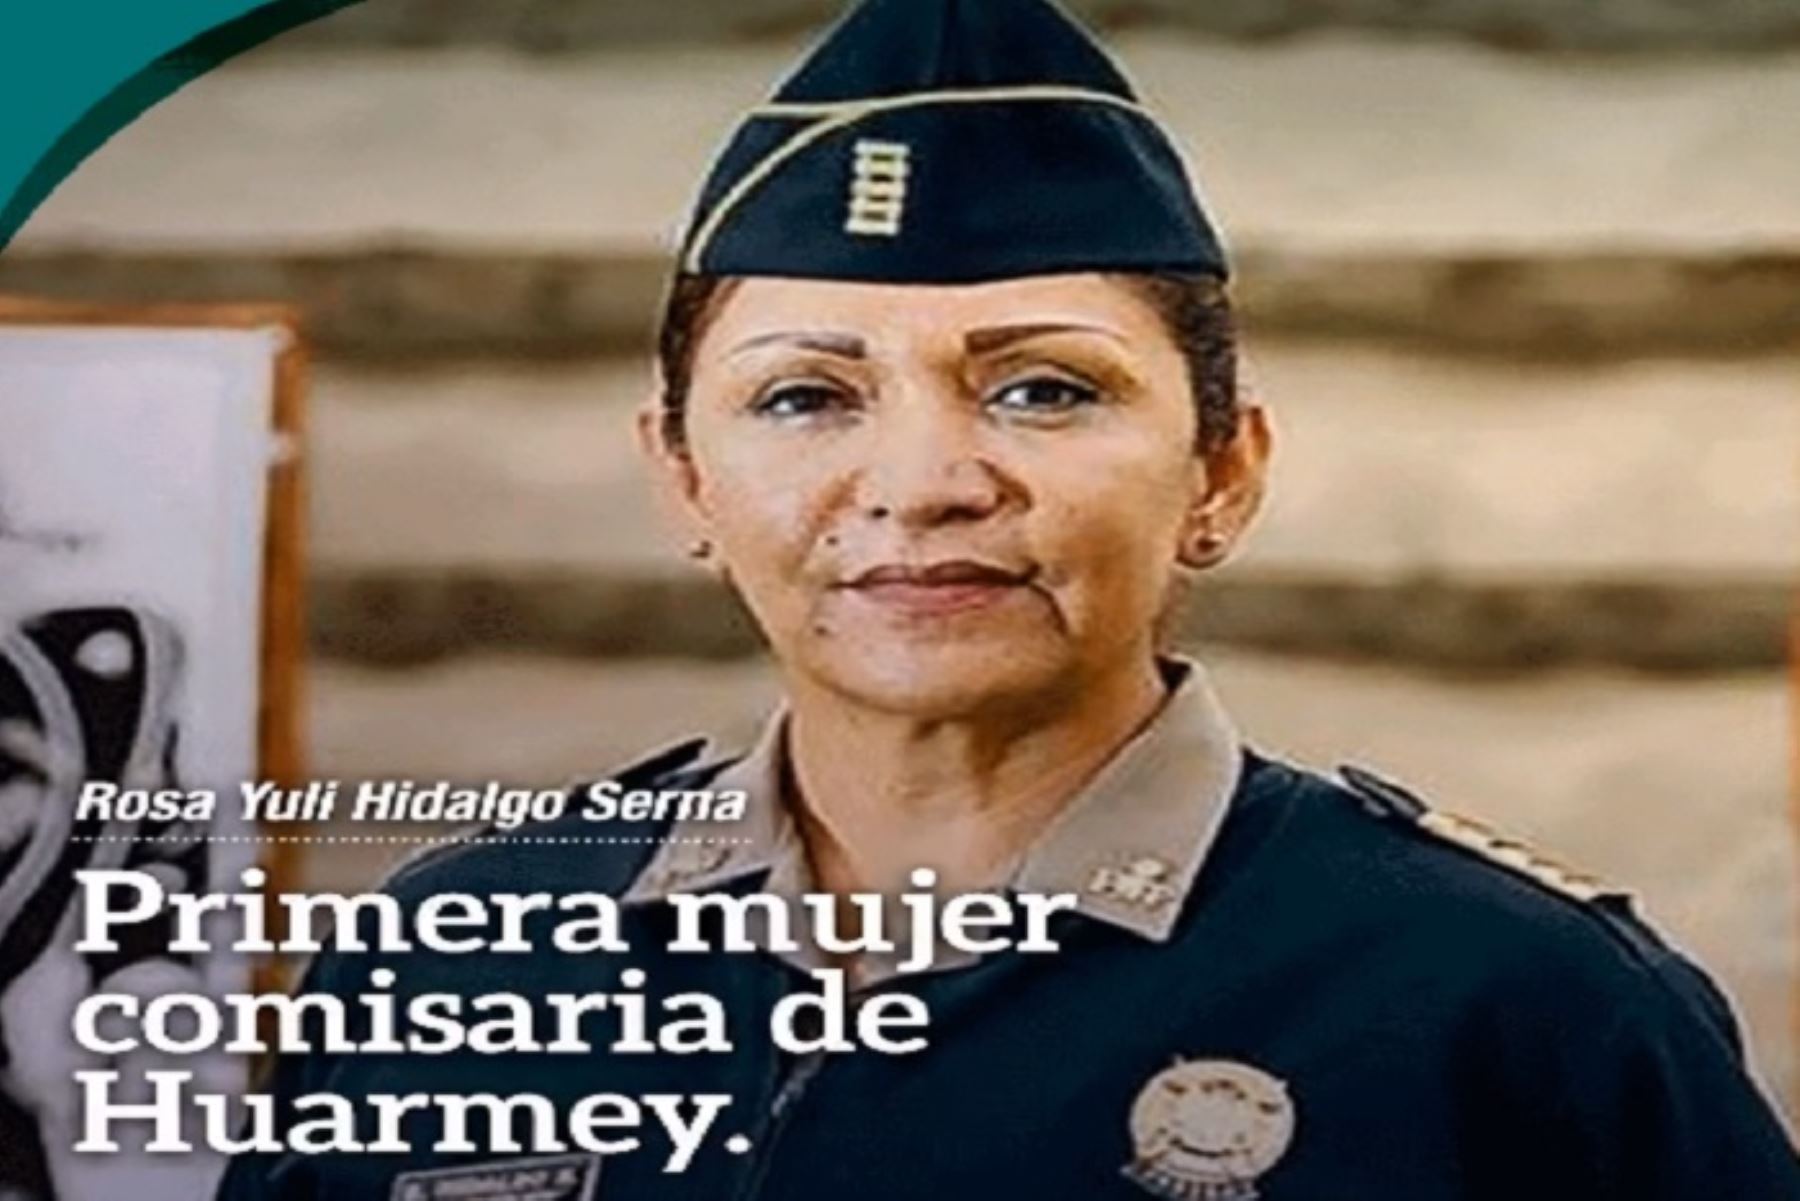 La comisaría de Huarmey, en la región Áncash, será dirigida - por primera vez- por una mujer. La comandante PNP Rosa Yuli Hidalgo Serna fue la designada para asumir el cargo, informó el Ministerio del Interior (Mininter), a través de su cuenta de Twitter.